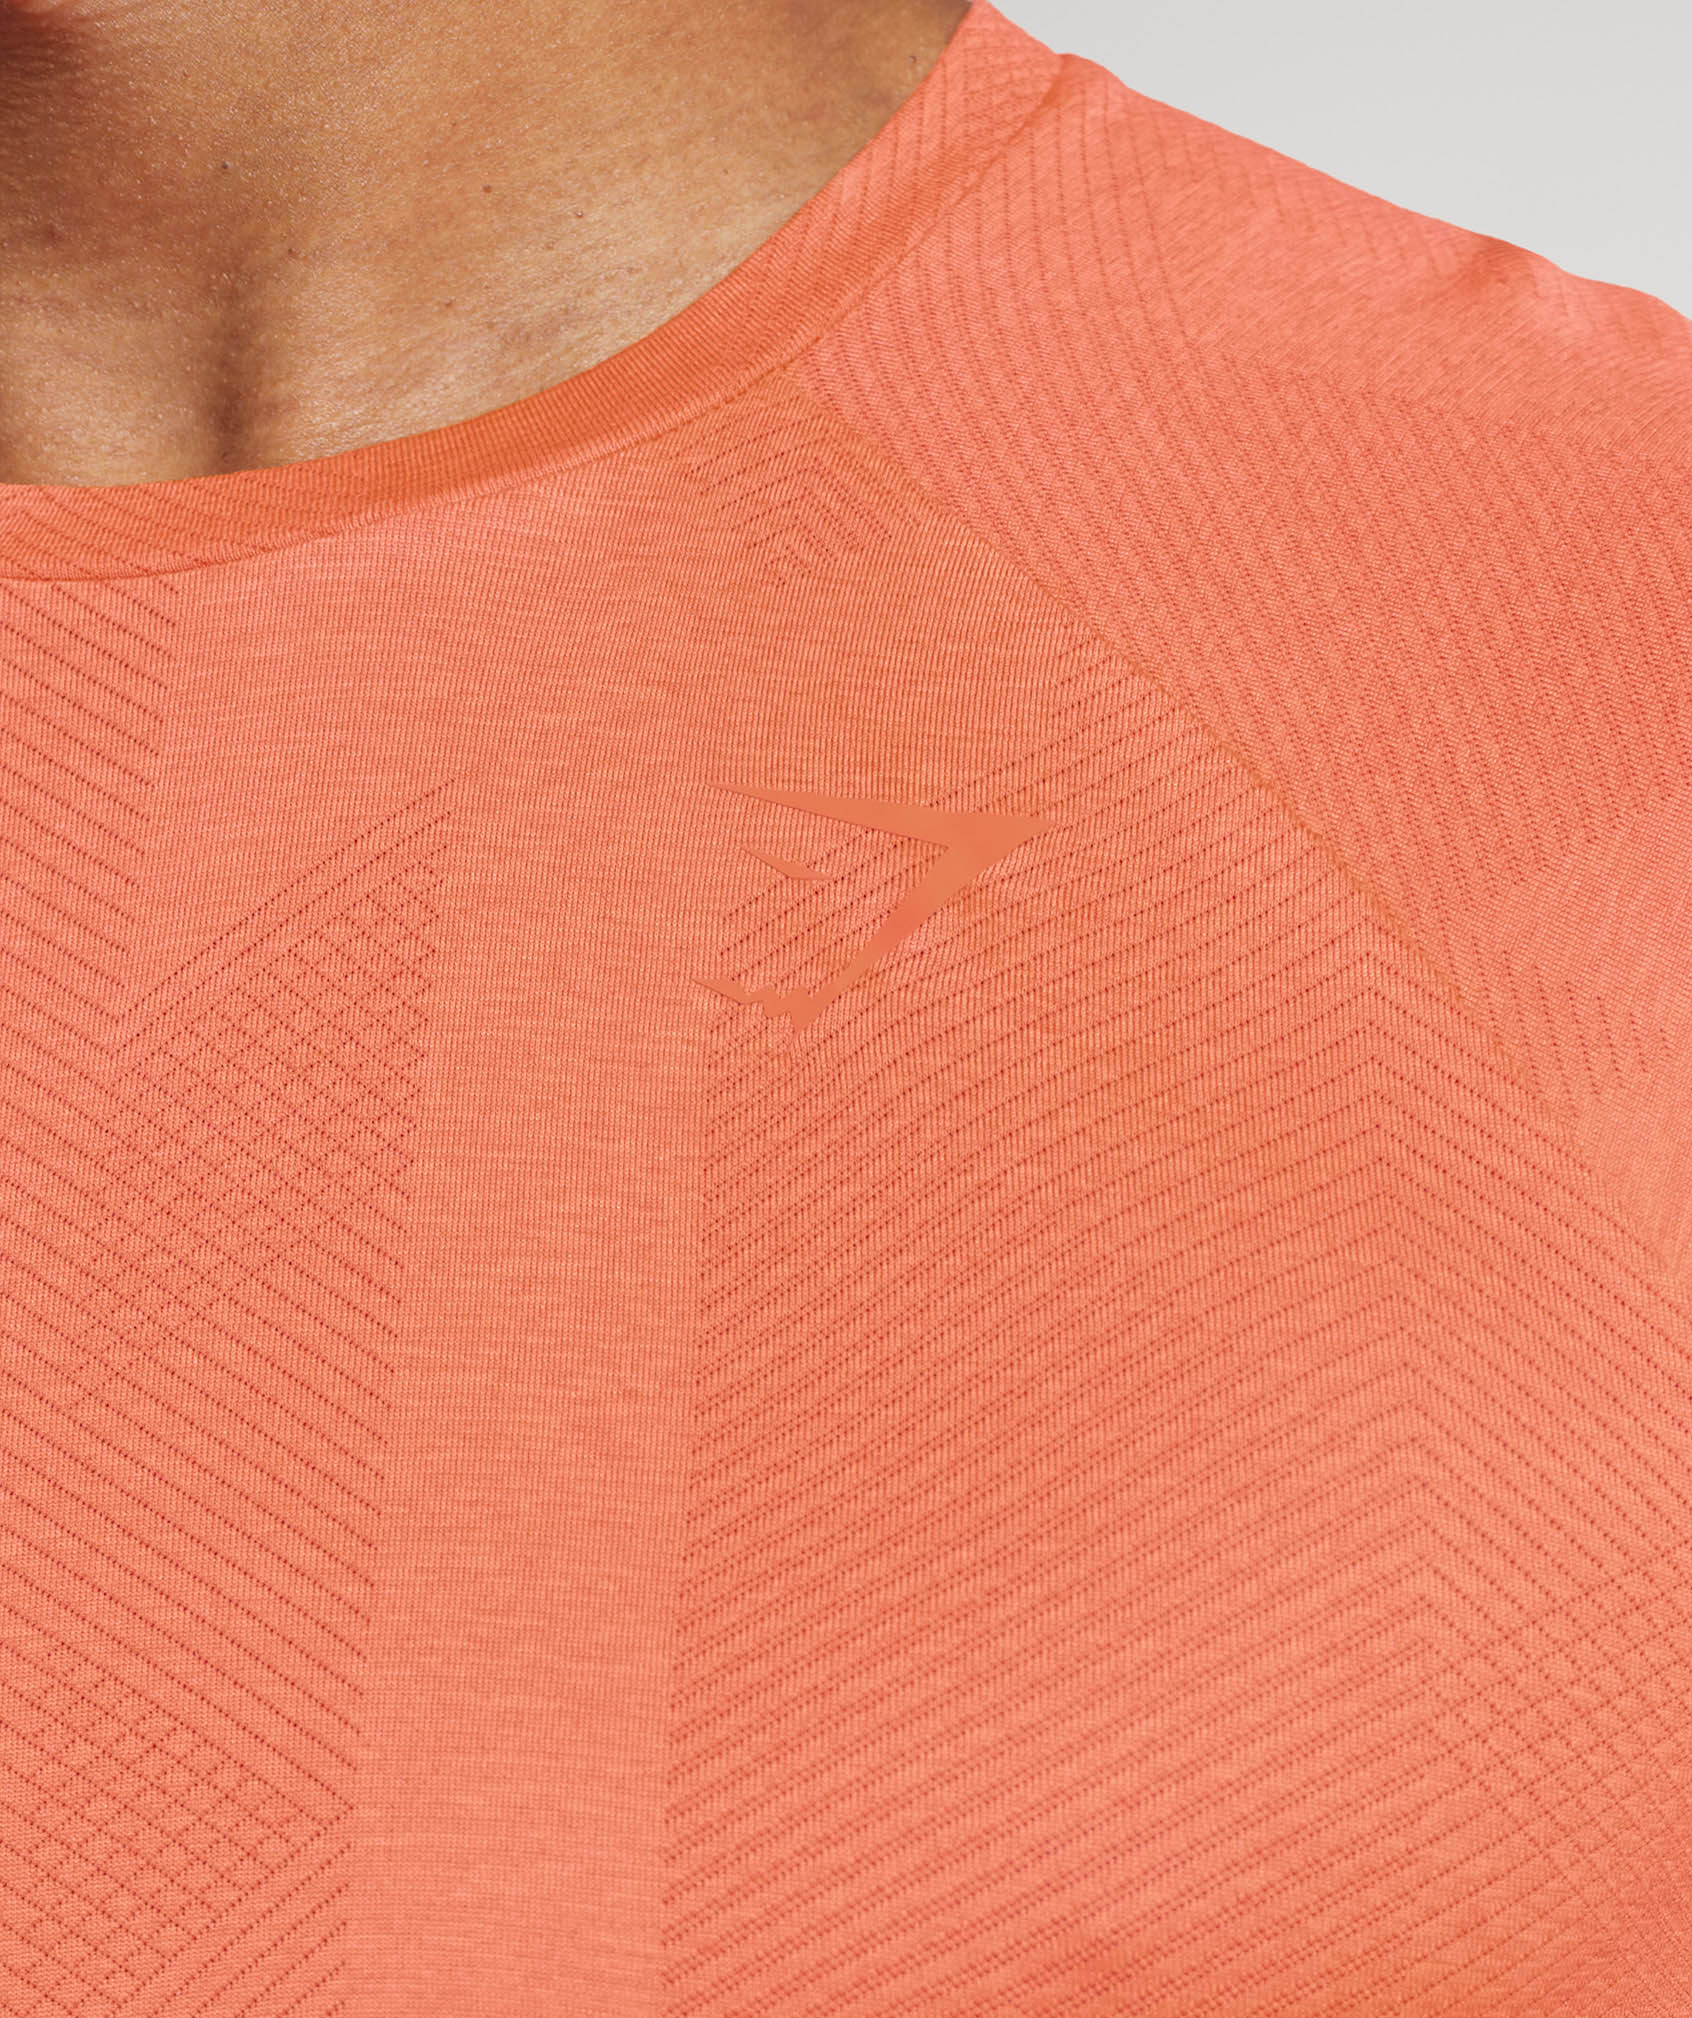 Apex T-Shirt in Solstice Orange/Fluo Peach